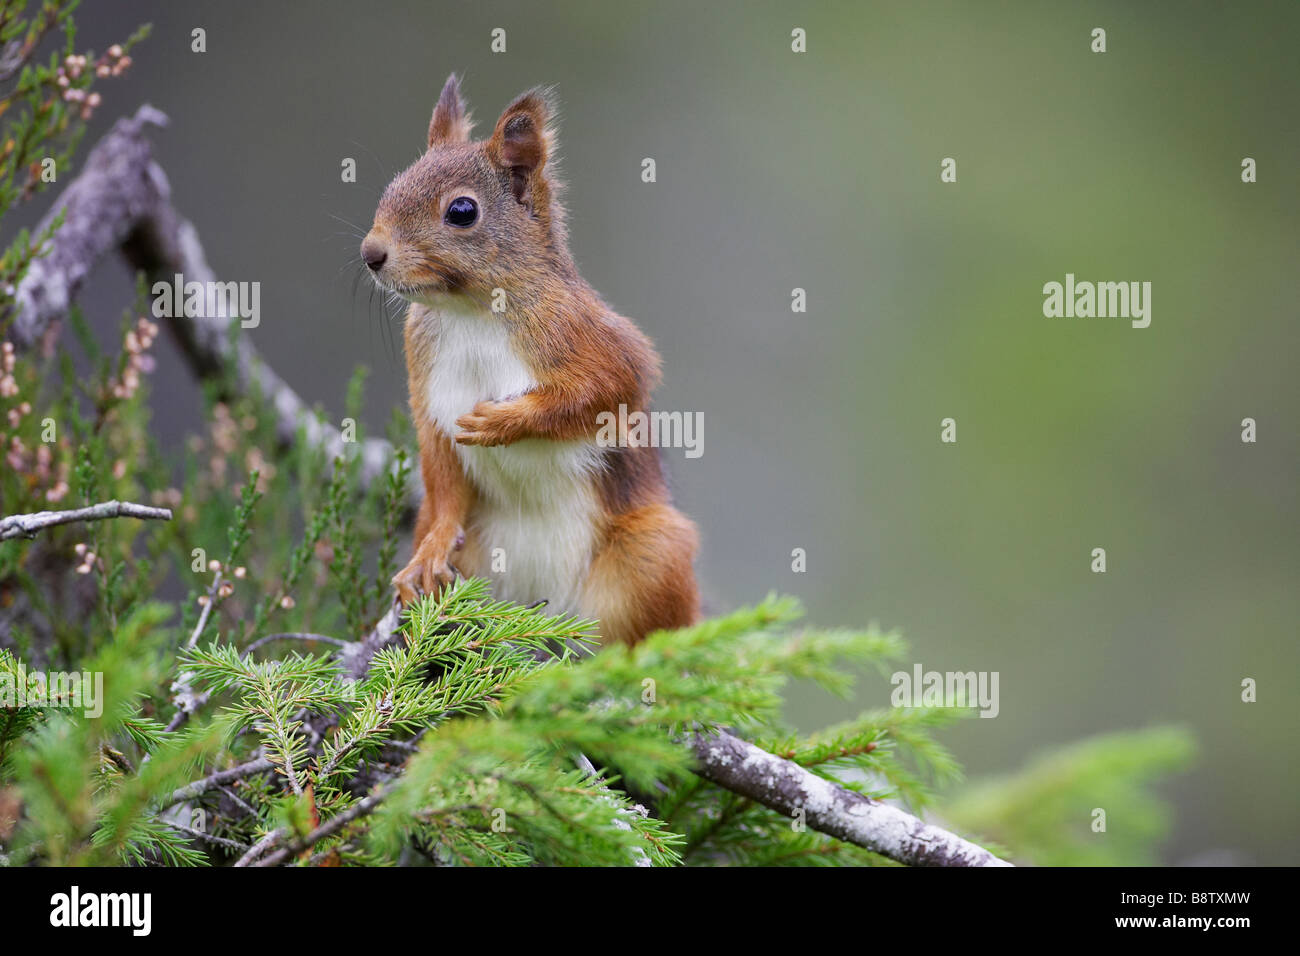 Red Squirrel (Sciurus vulgaris), portrait on pine branch Stock Photo